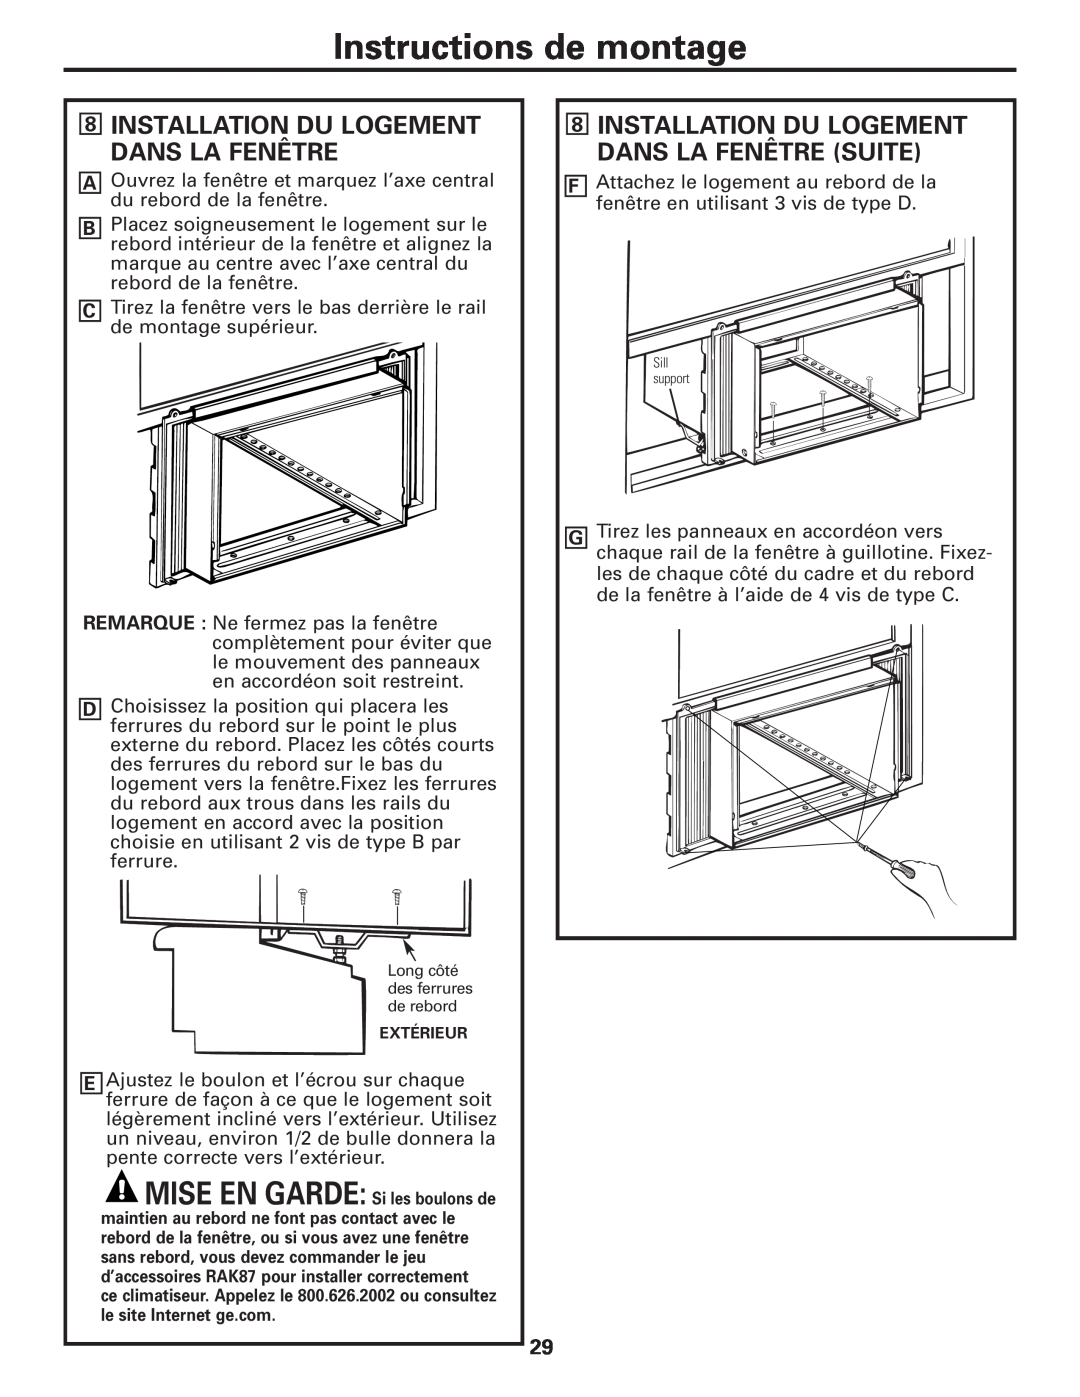 GE AEM10 owner manual Installation Du Logement Dans La Fenêtre Suite, Instructions de montage 